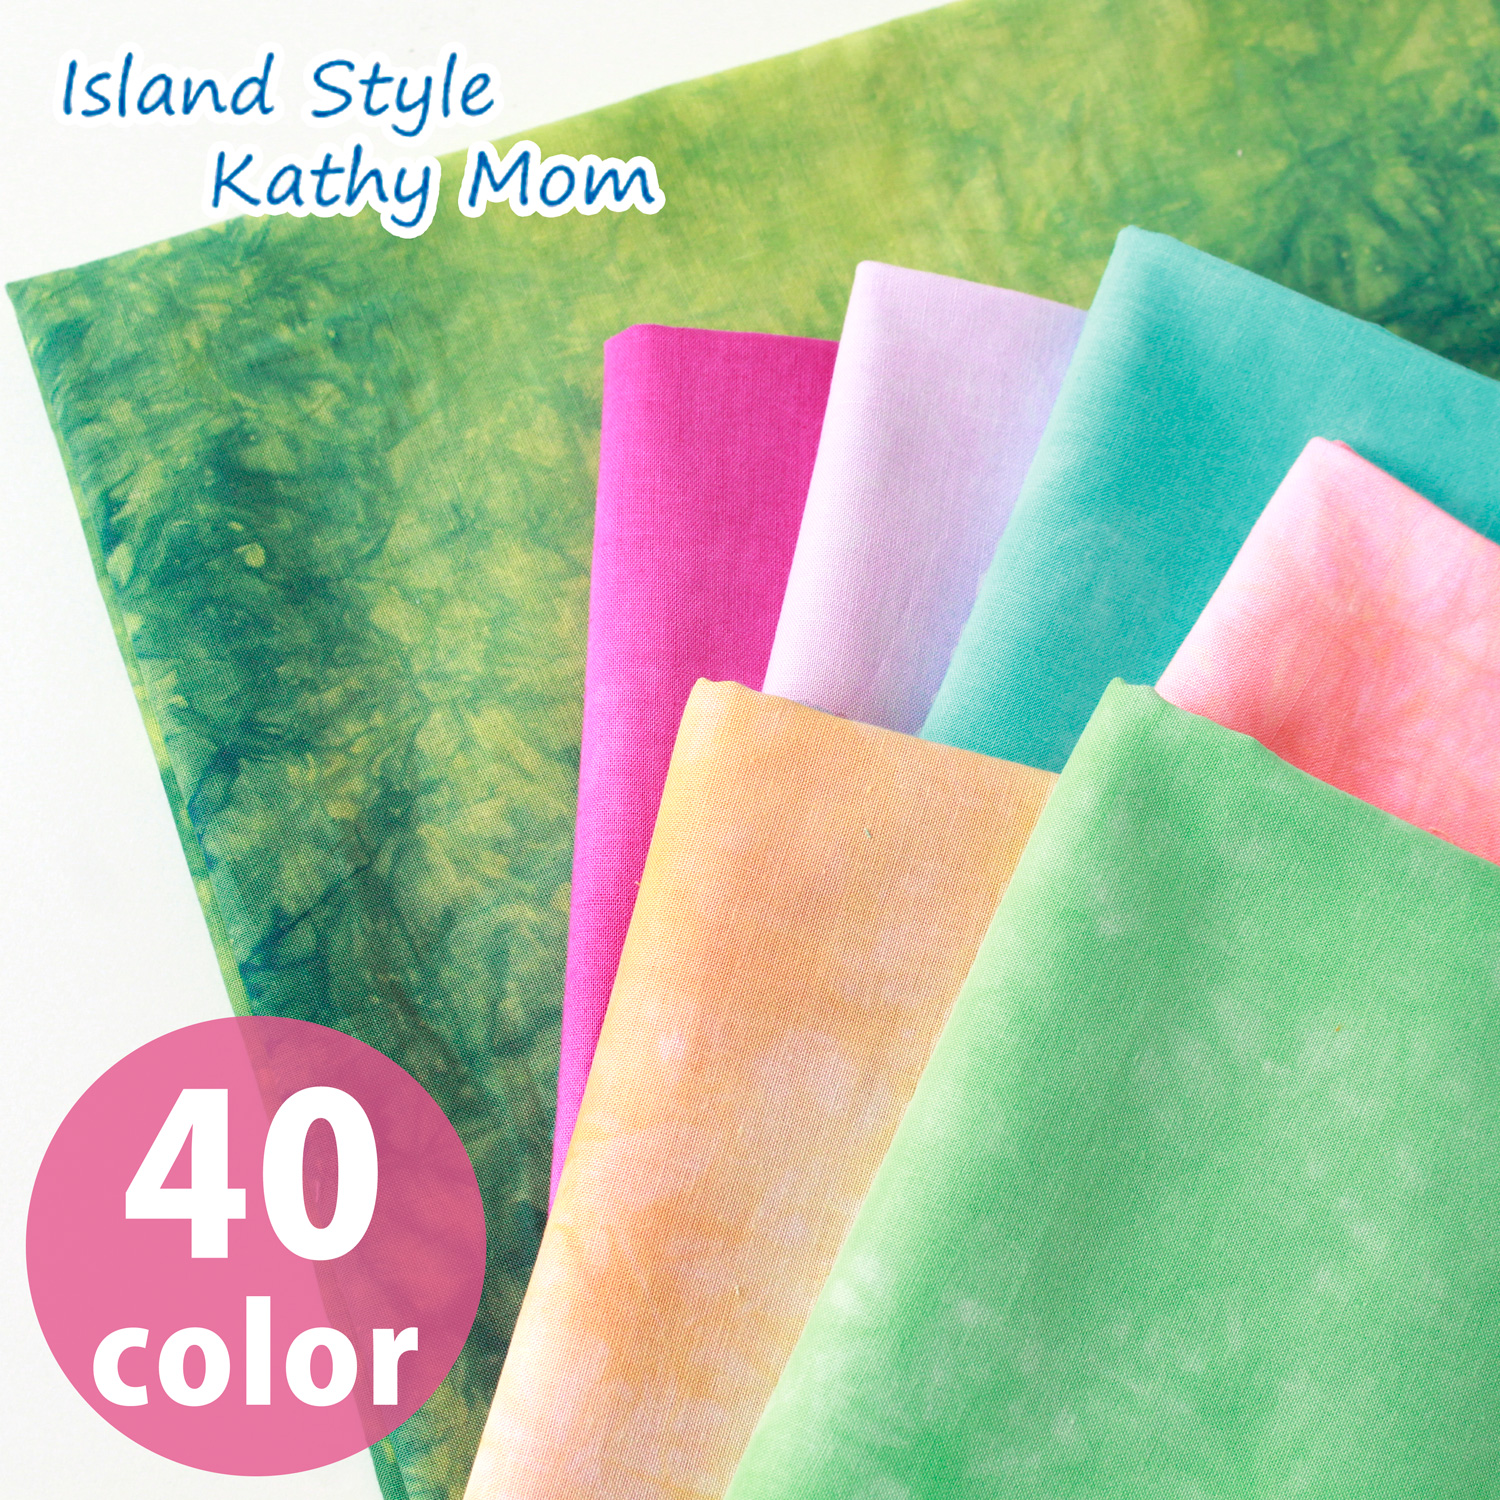 ■MT6500R Kathy Mom lani dai Tie-dye irregular dye bolt approx. 8m (roll)